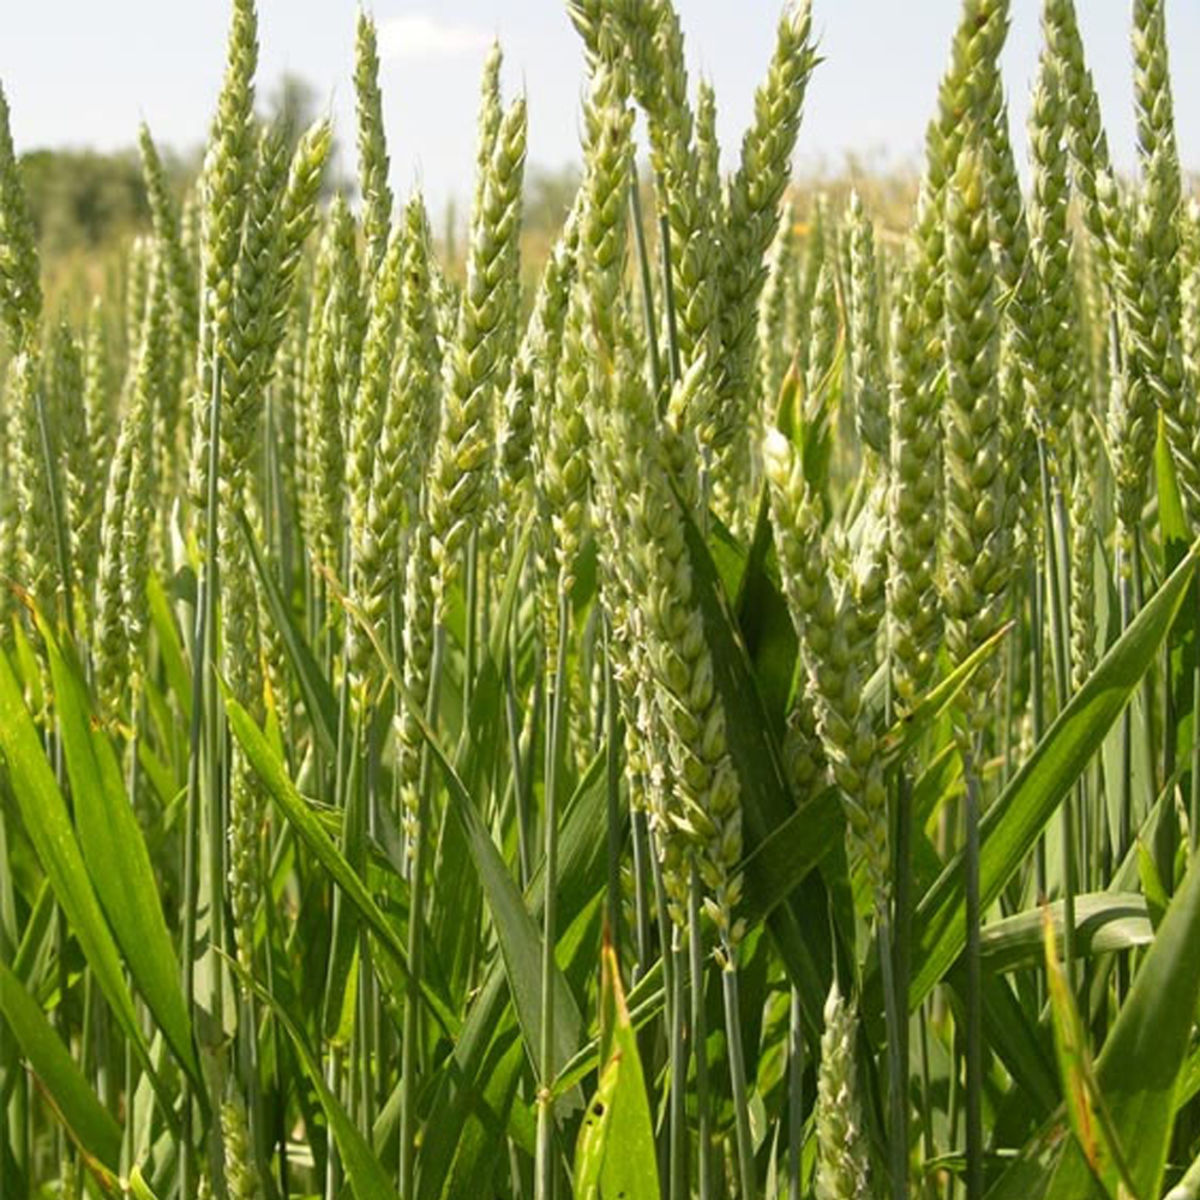 #LeSaviezVous? L'amélioration génétique, l'irrigation, les engrais et la mécanisation ont augmenté les rendements. Pour le blé, ils sont passés de 1 à 3,5 tonnes/hectare entre 1960 et 2020. En Europe, ils peuvent monter à 7 ou 8 tonnes/hectare. [En librairie demain]